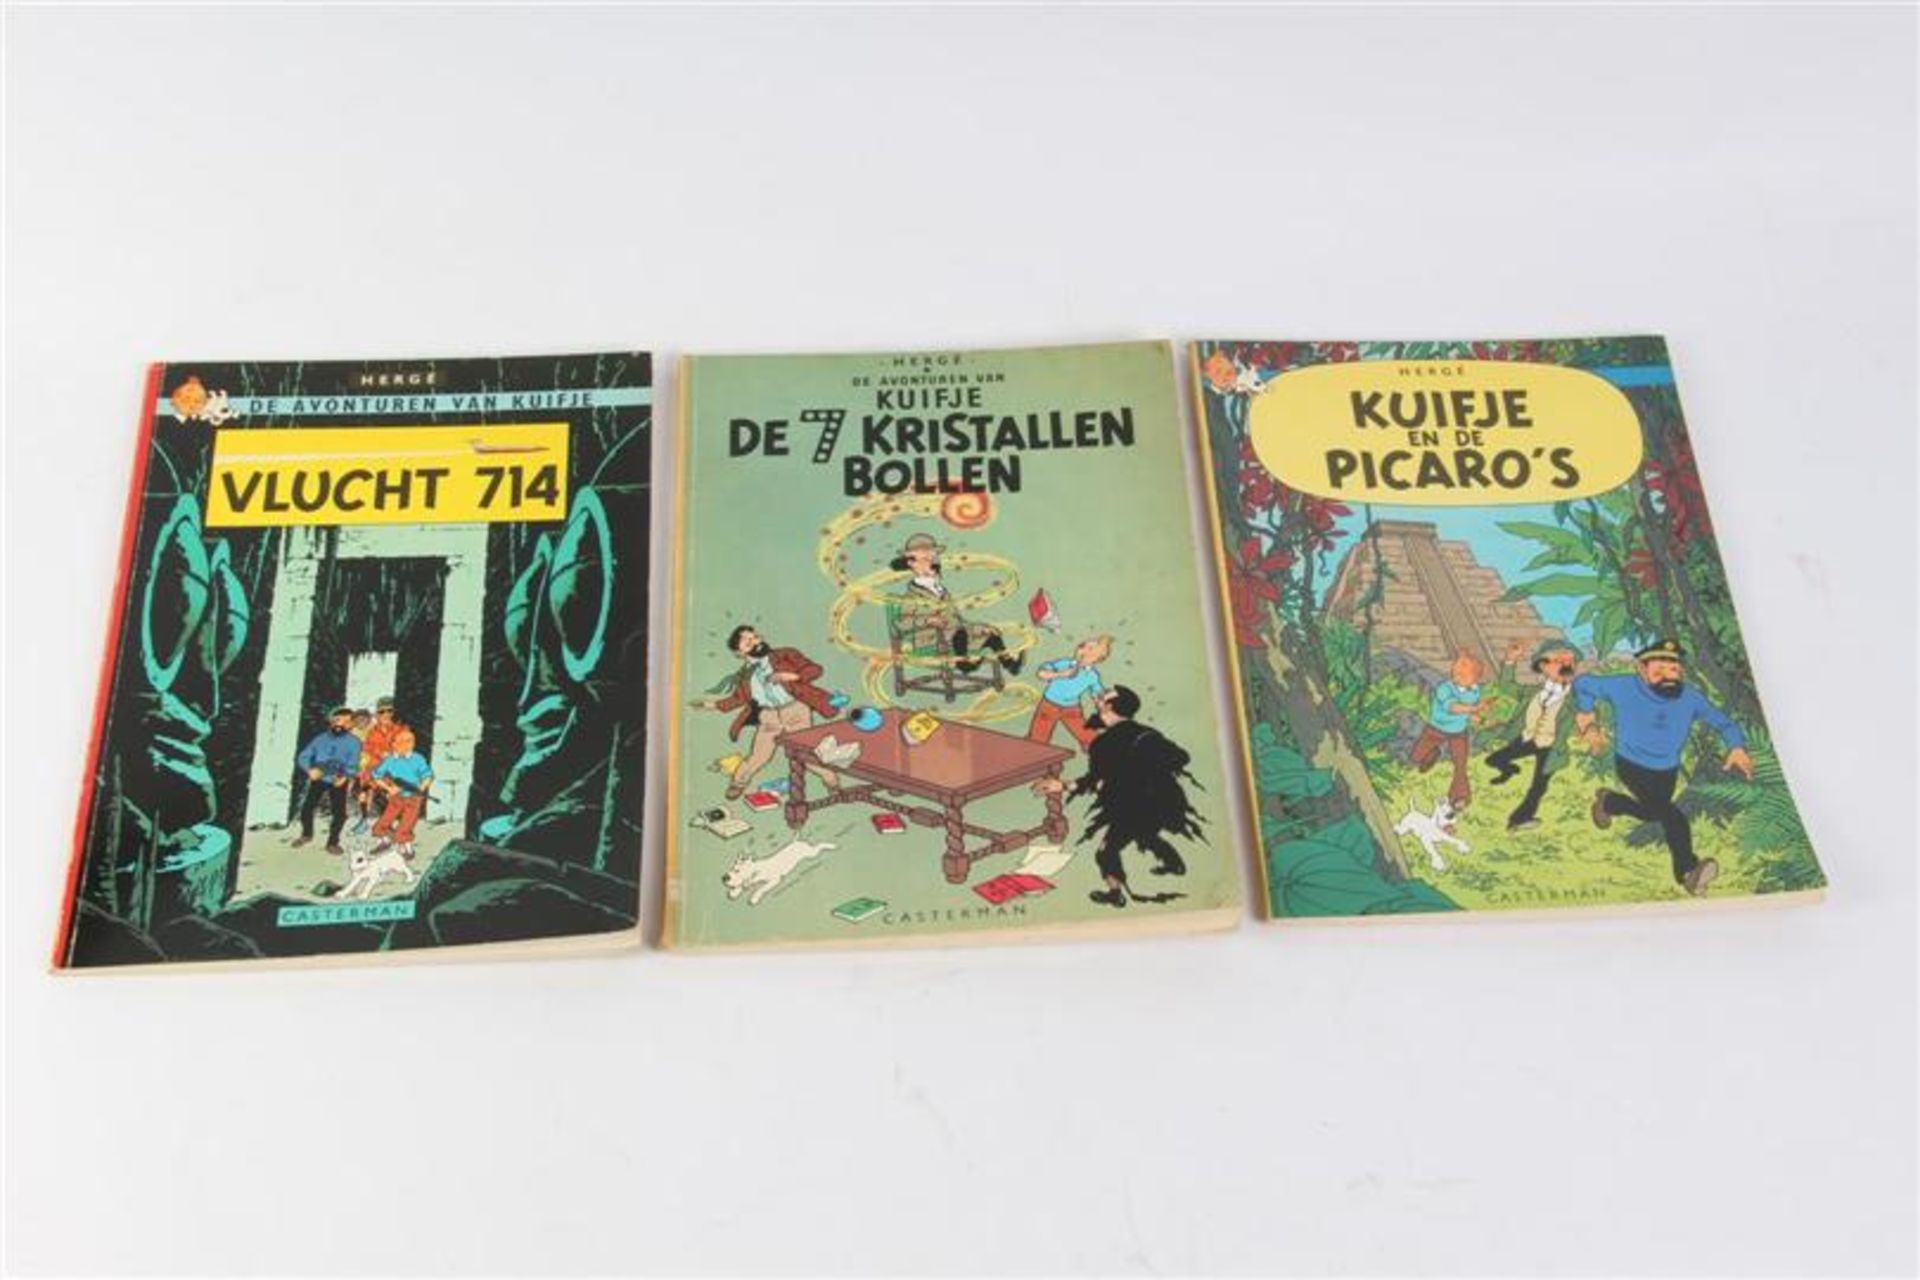 De avonturen van Kuifje, Hergé, uitgeverij Casterman, 7 hardcovers en drie softcovers. - Bild 5 aus 17